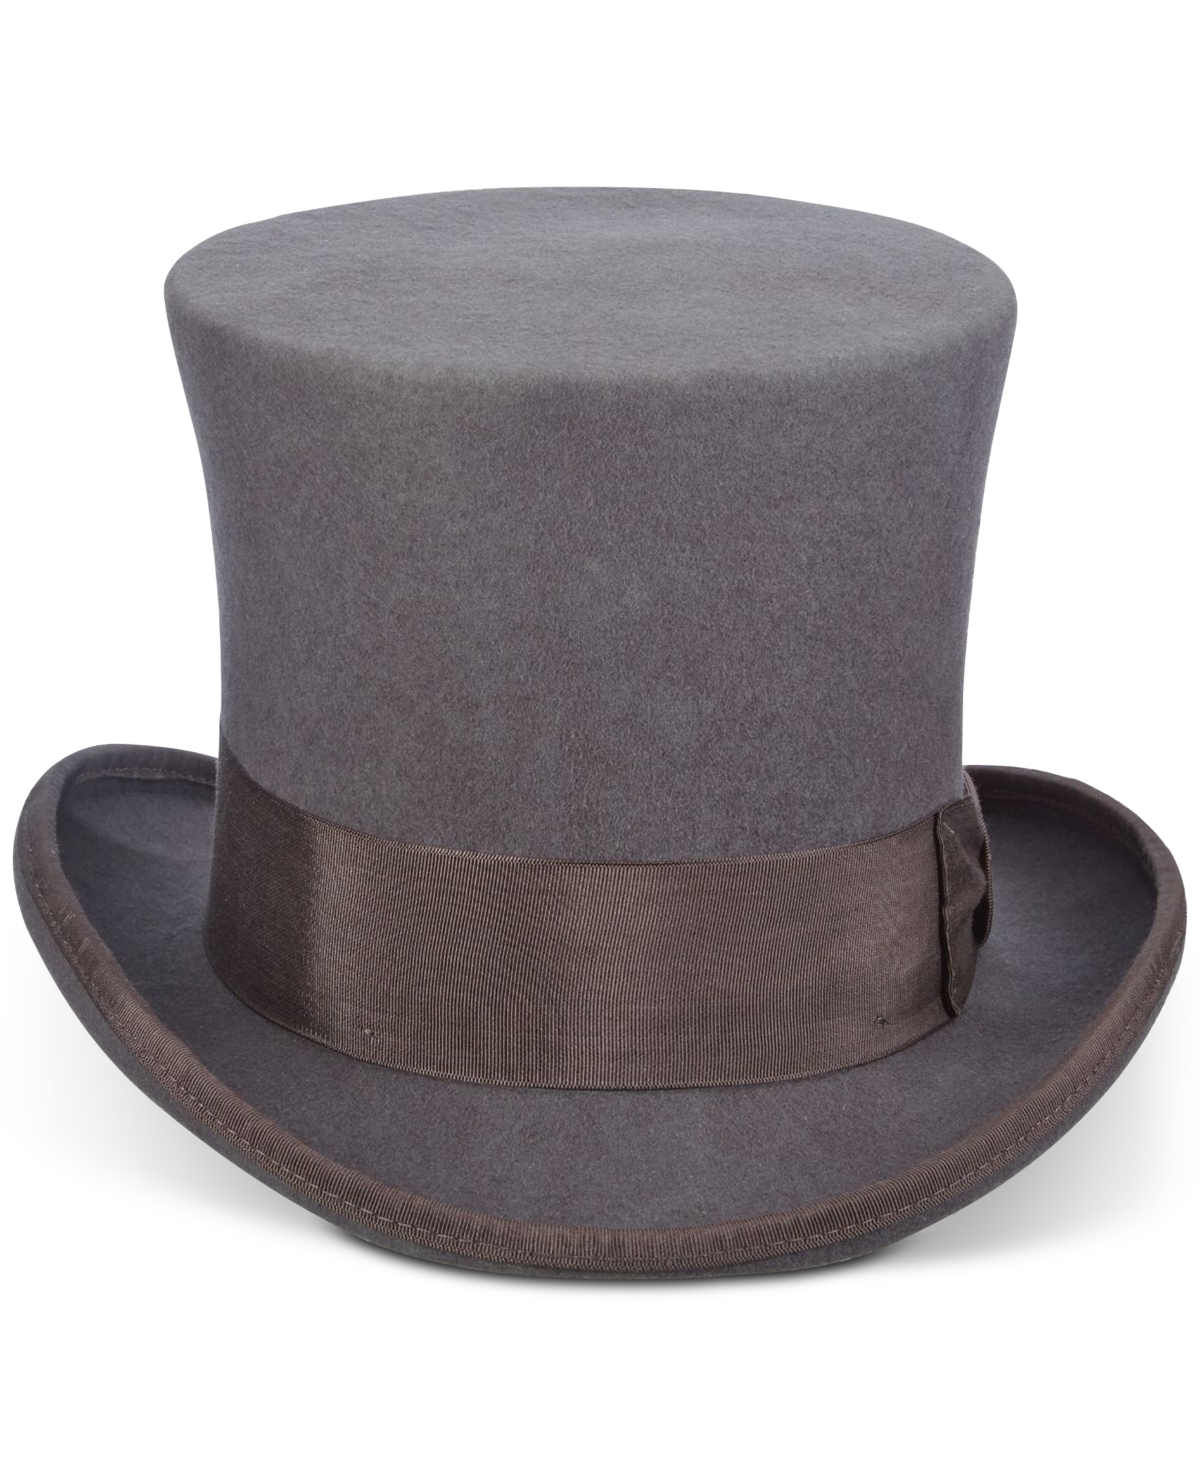 Men's Top Hat - Grey